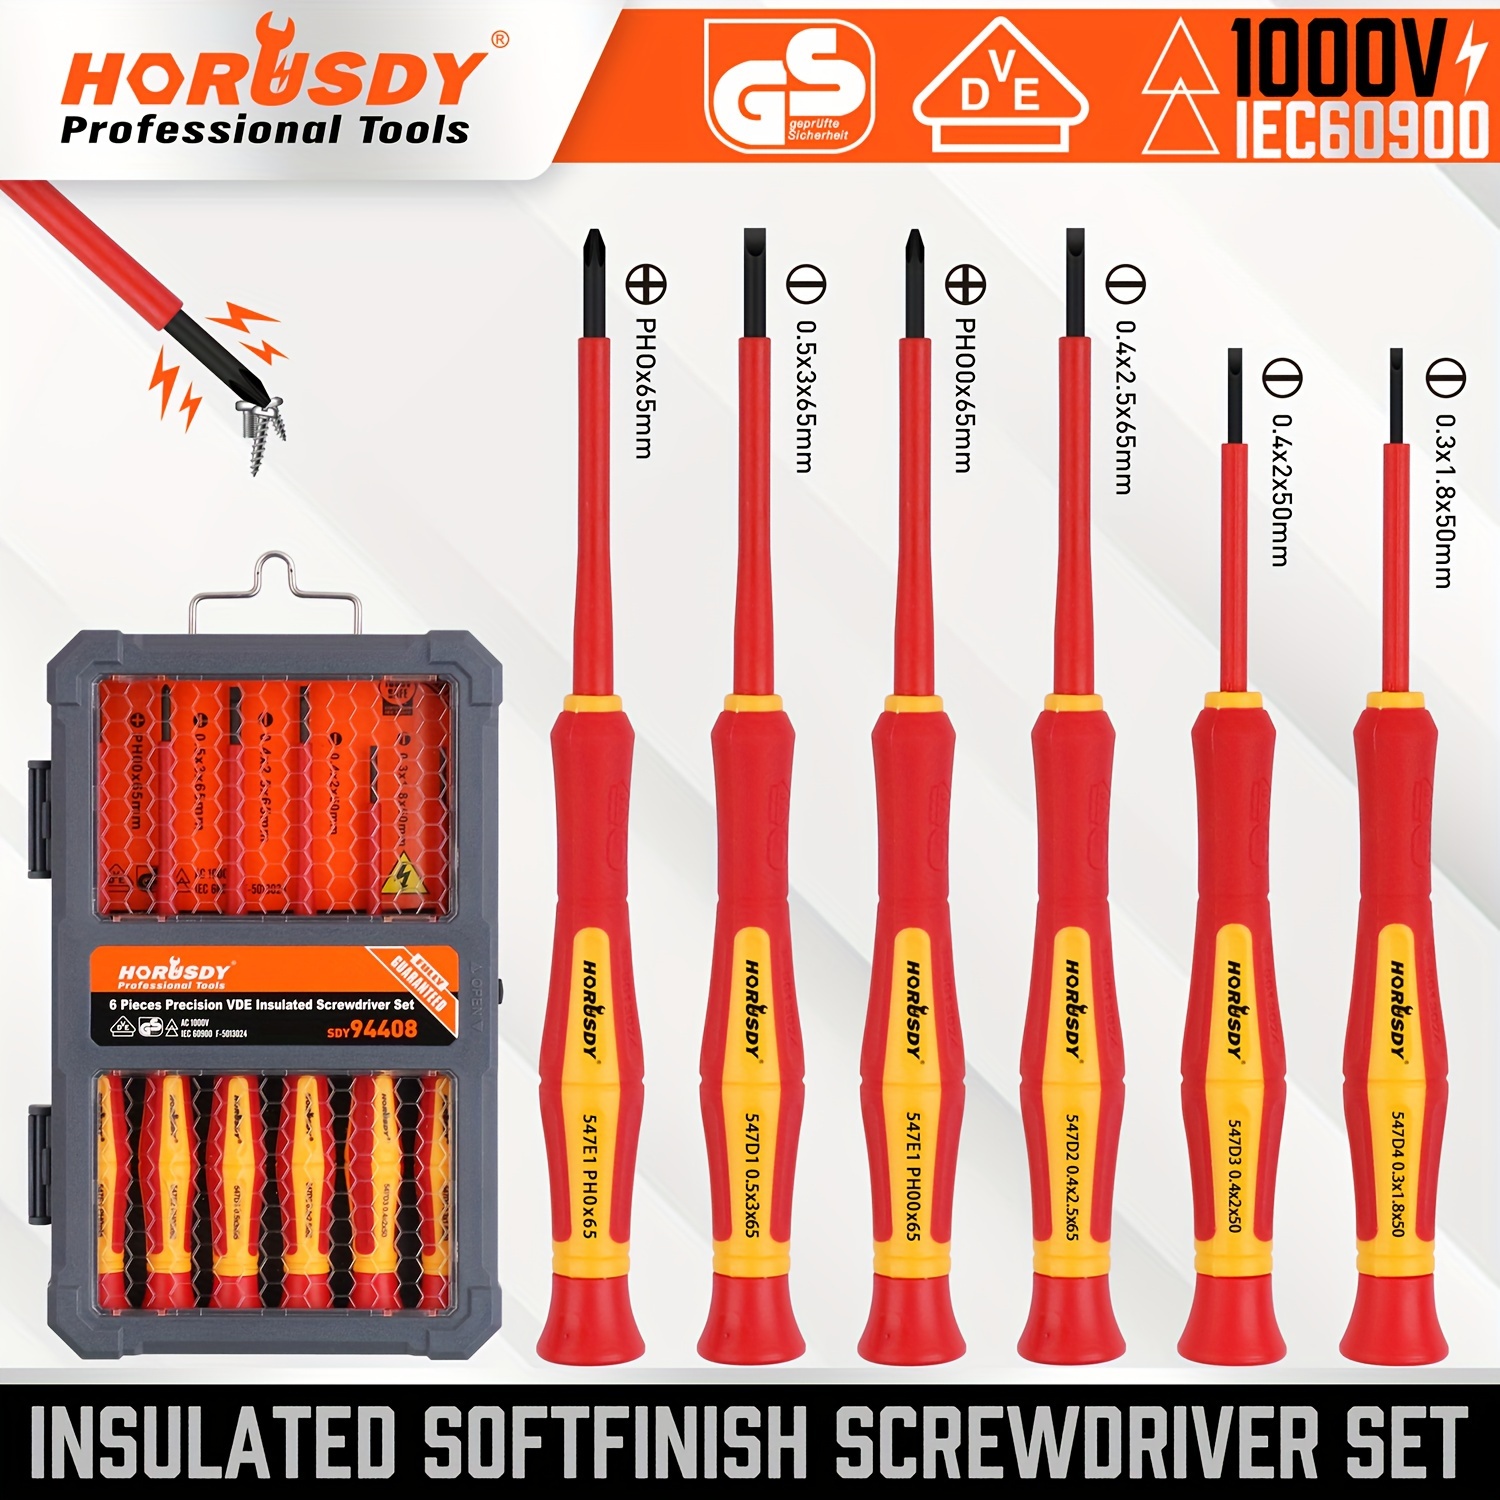 

Horusdy 1000v 6-piece Mini Insulated Screwdriver Set